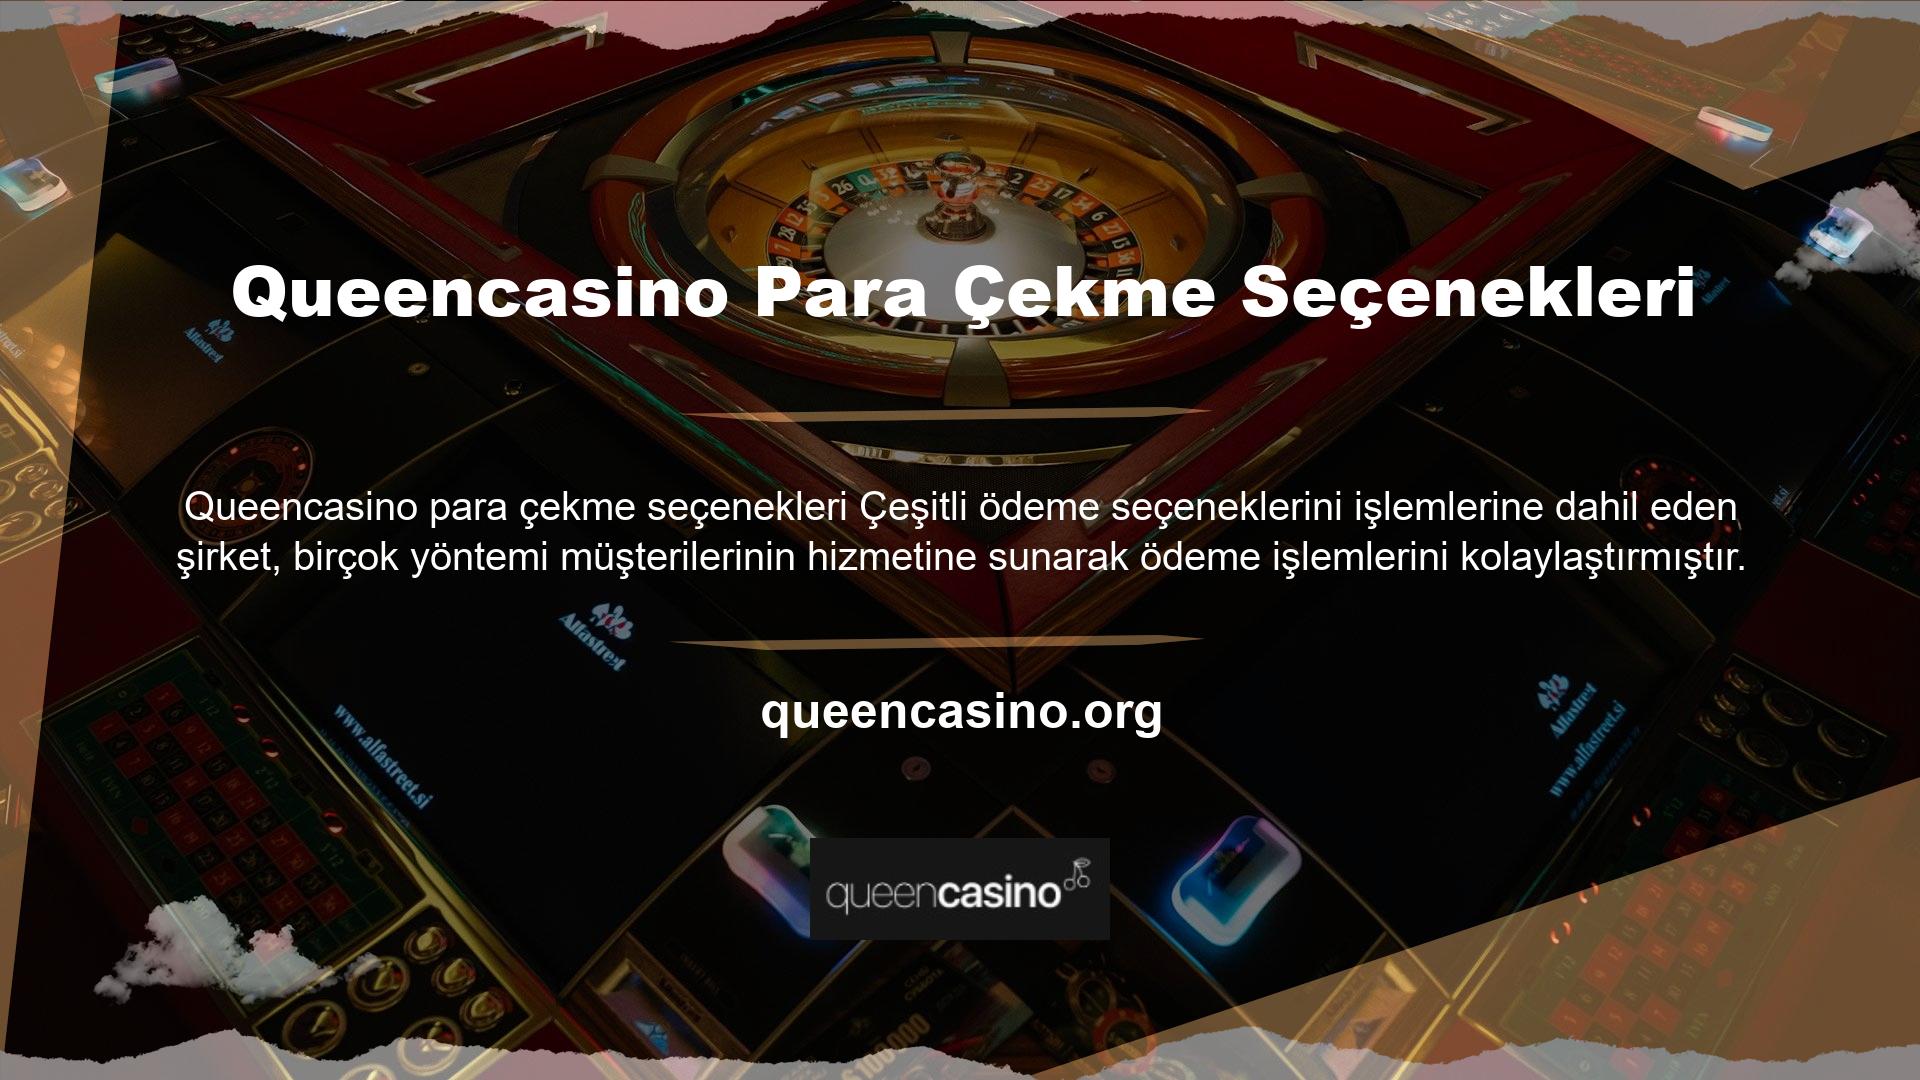 Siteye girdiğiniz andan itibaren Queencasino para çekme seçeneklerine göz atarak size uygun olan yöntemi seçebilirsiniz